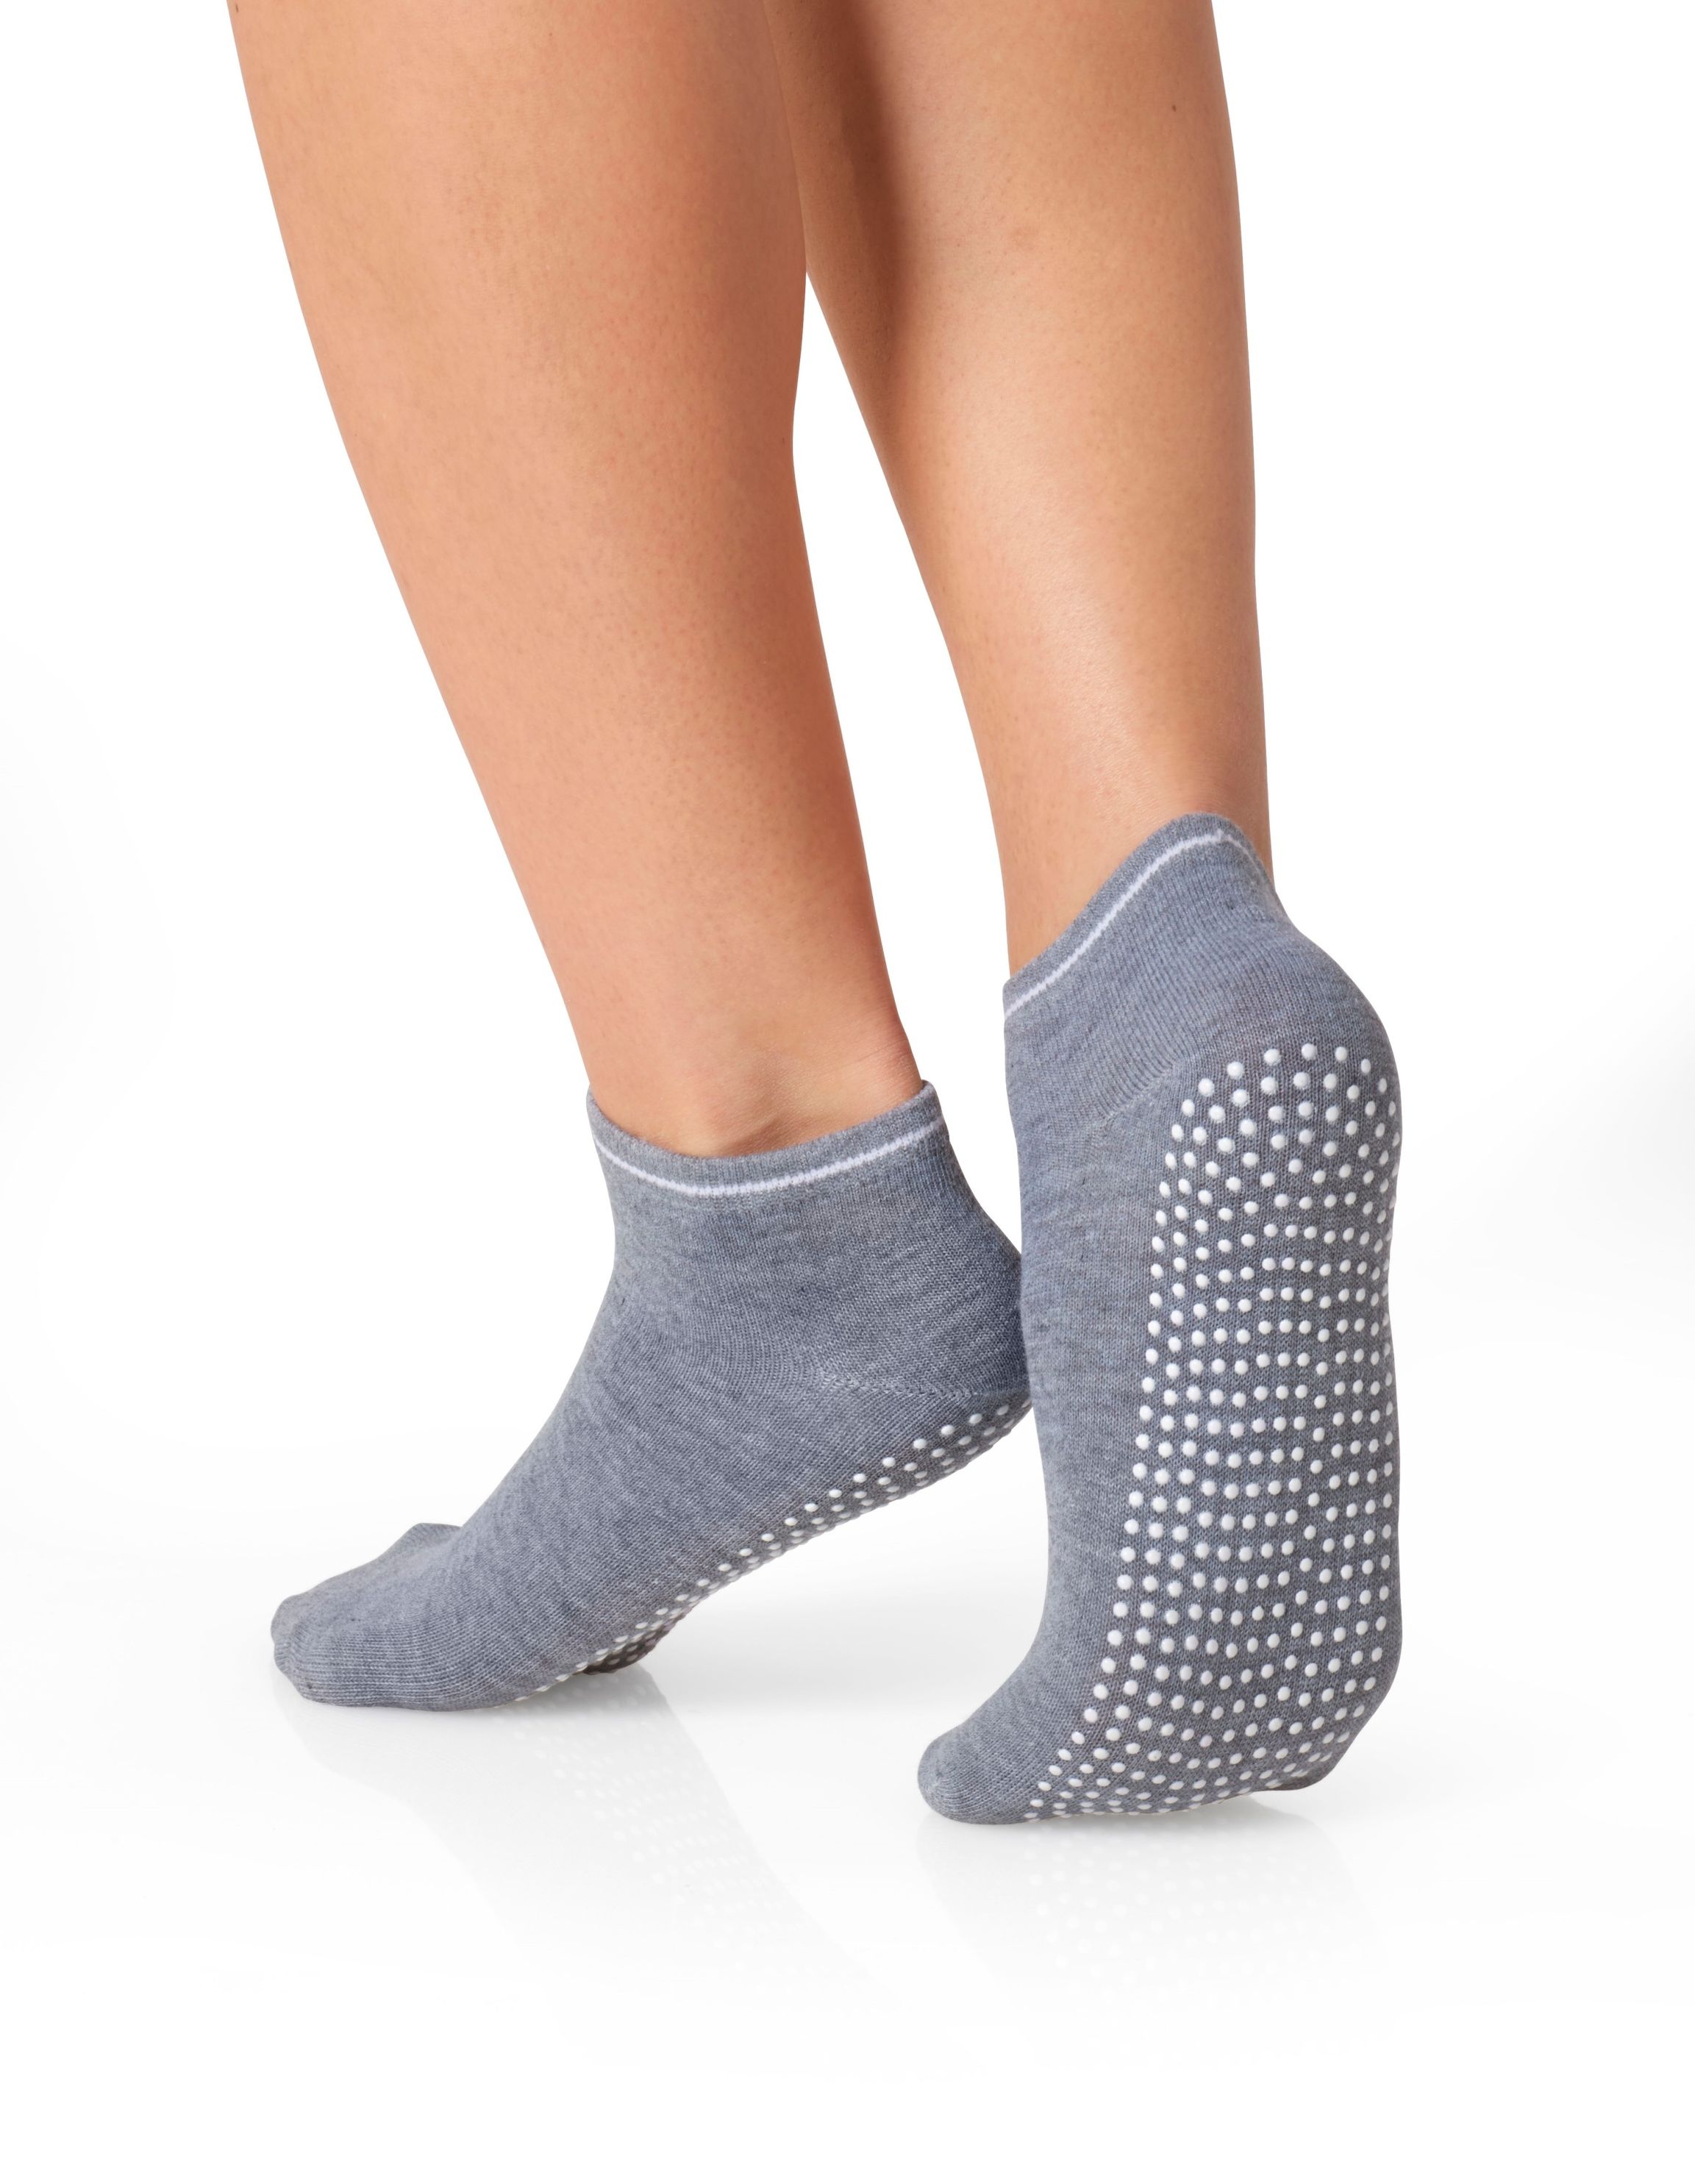 Orbisana Yoga- und Pilates-Socken, 3 Paar online kaufen - Orbisana